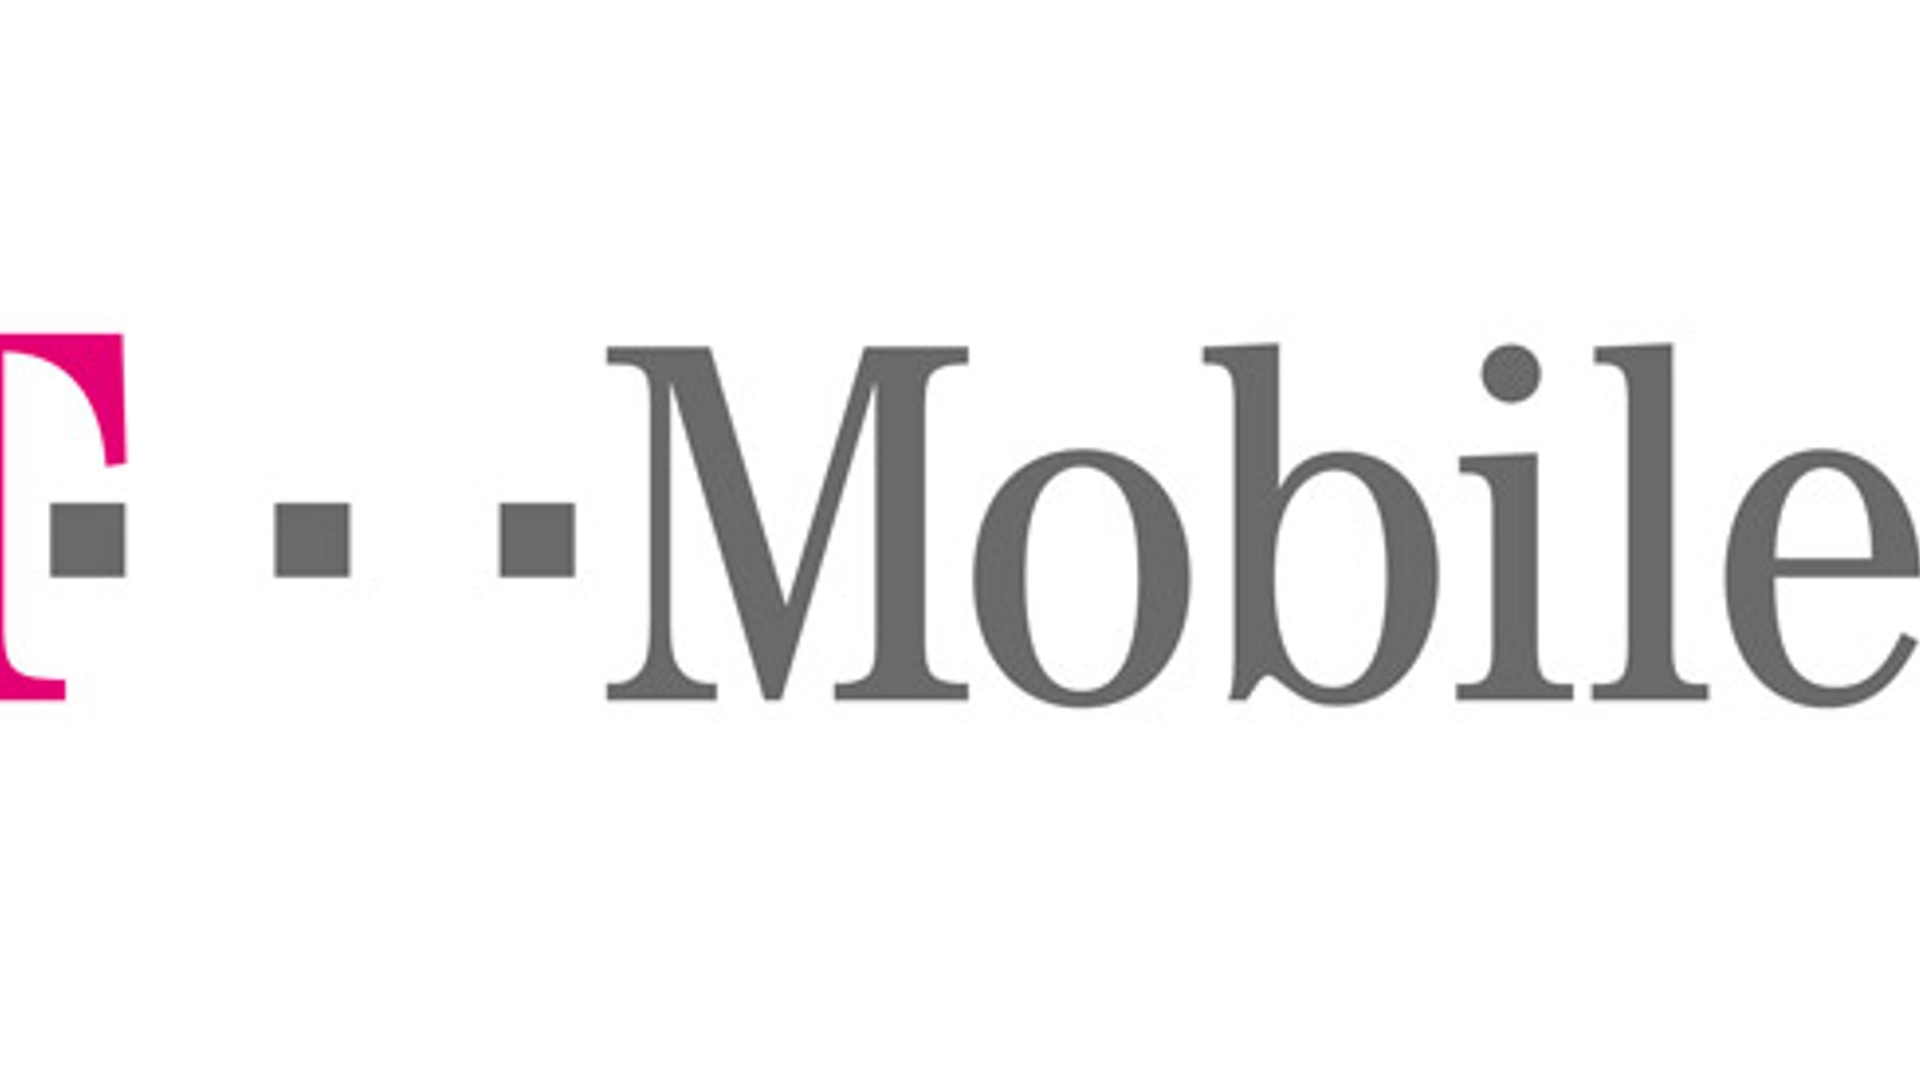 T-Mobile.jpg